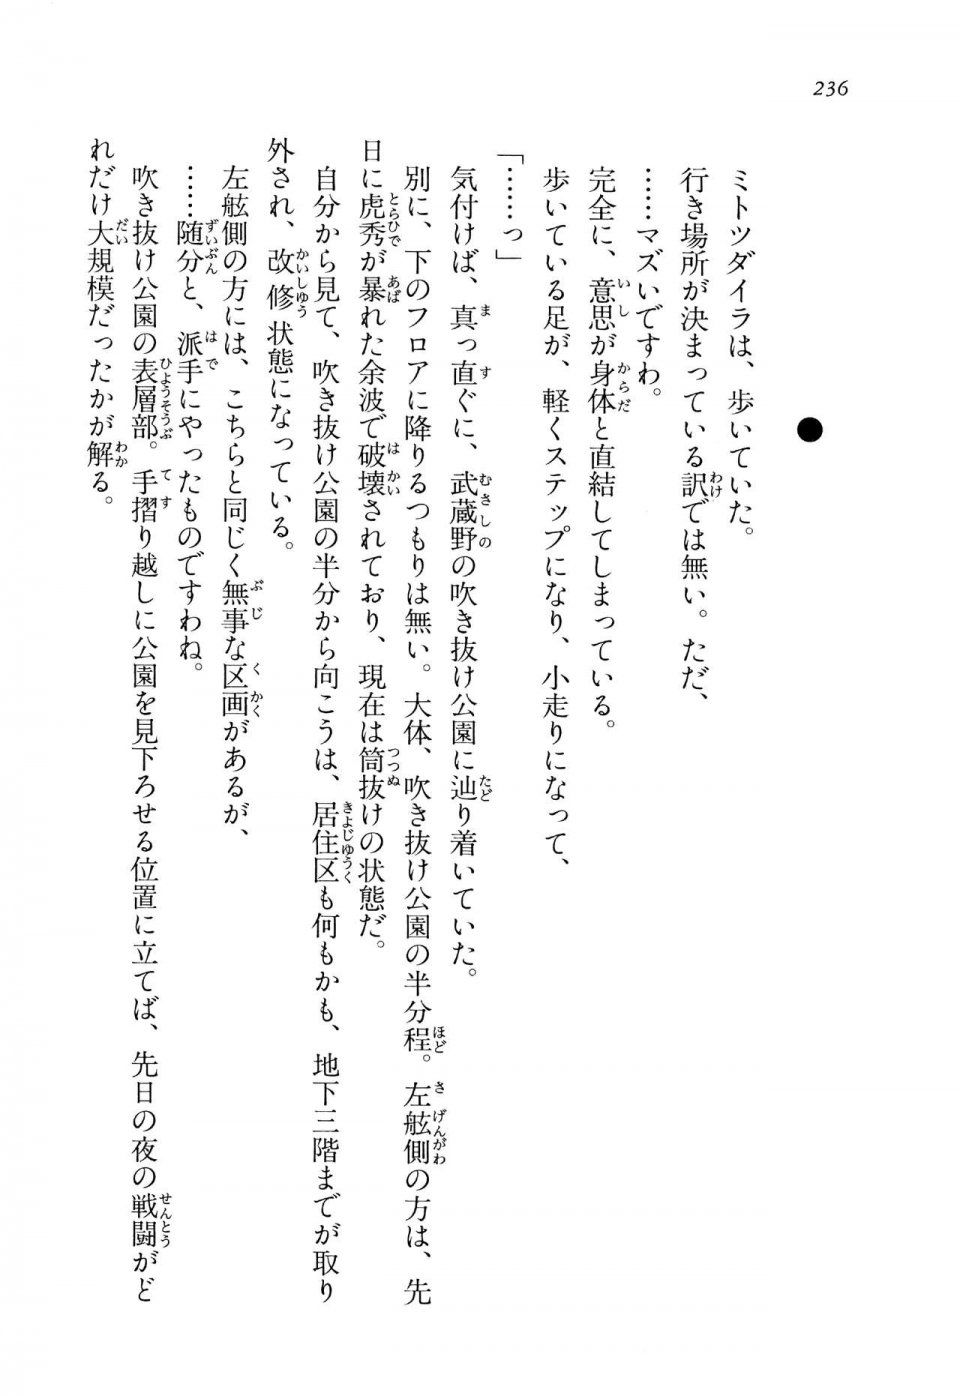 Kyoukai Senjou no Horizon LN Vol 14(6B) - Photo #236